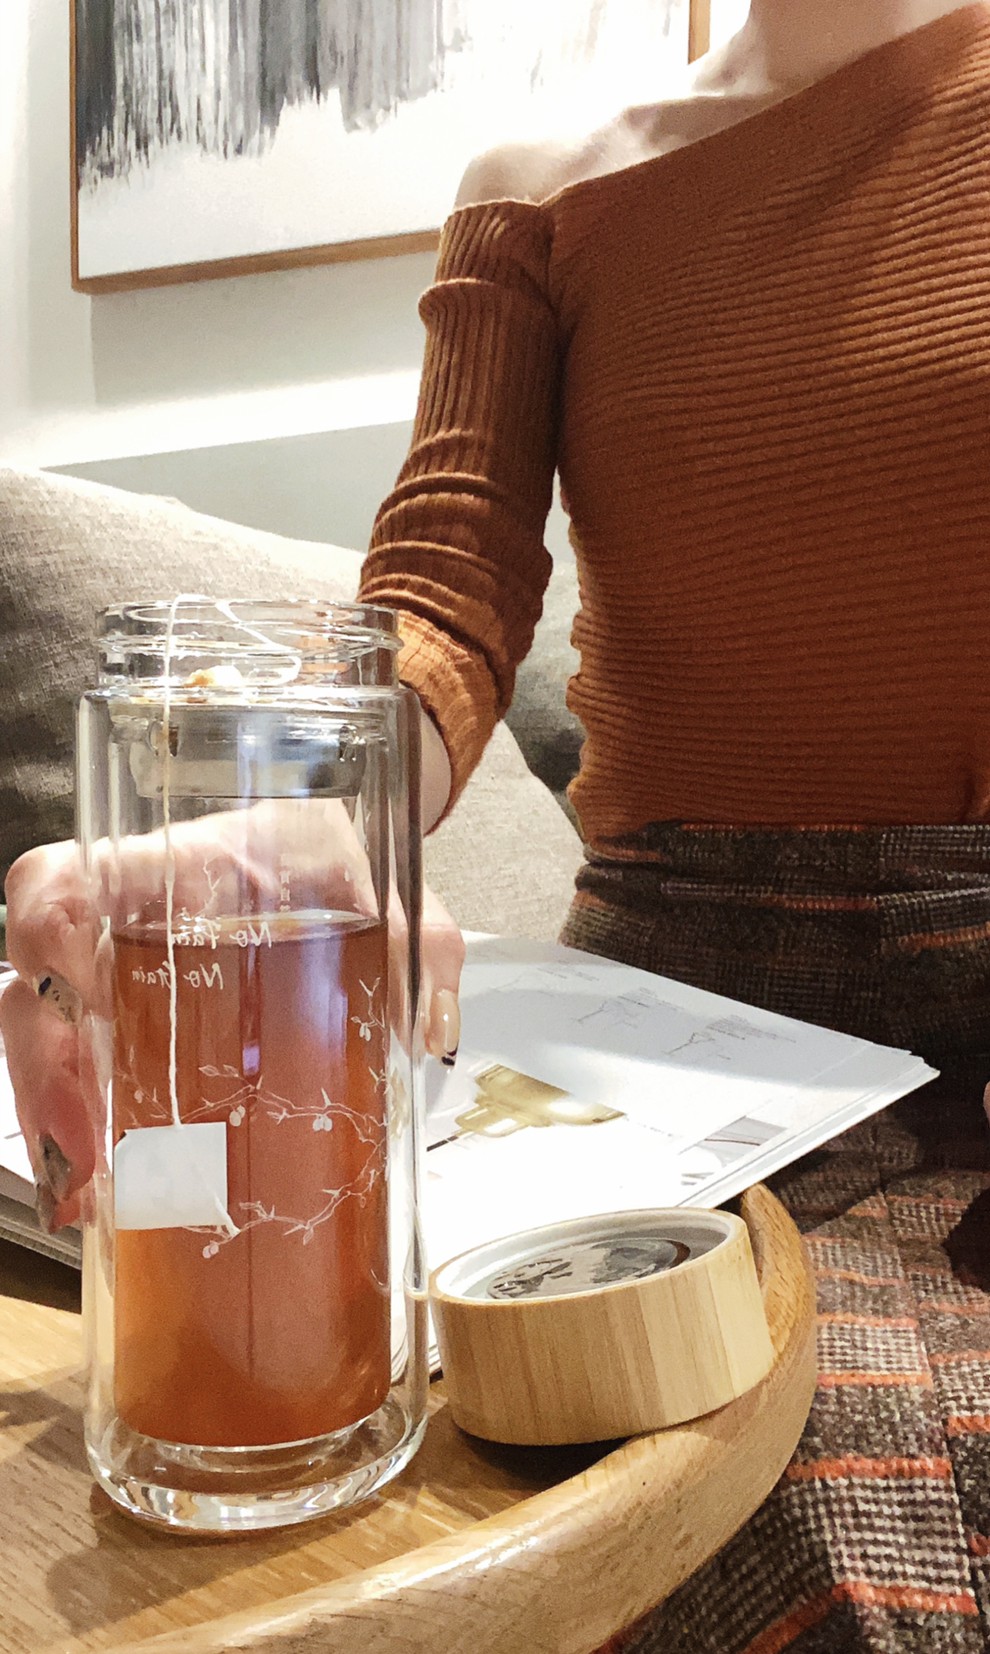 [揪團] Teascovery發現茶.搖一搖30秒就有超好喝的冷泡茶可以喝!(本次有超夯的兒茶素綠茶及冷泡茶)補貨第12團